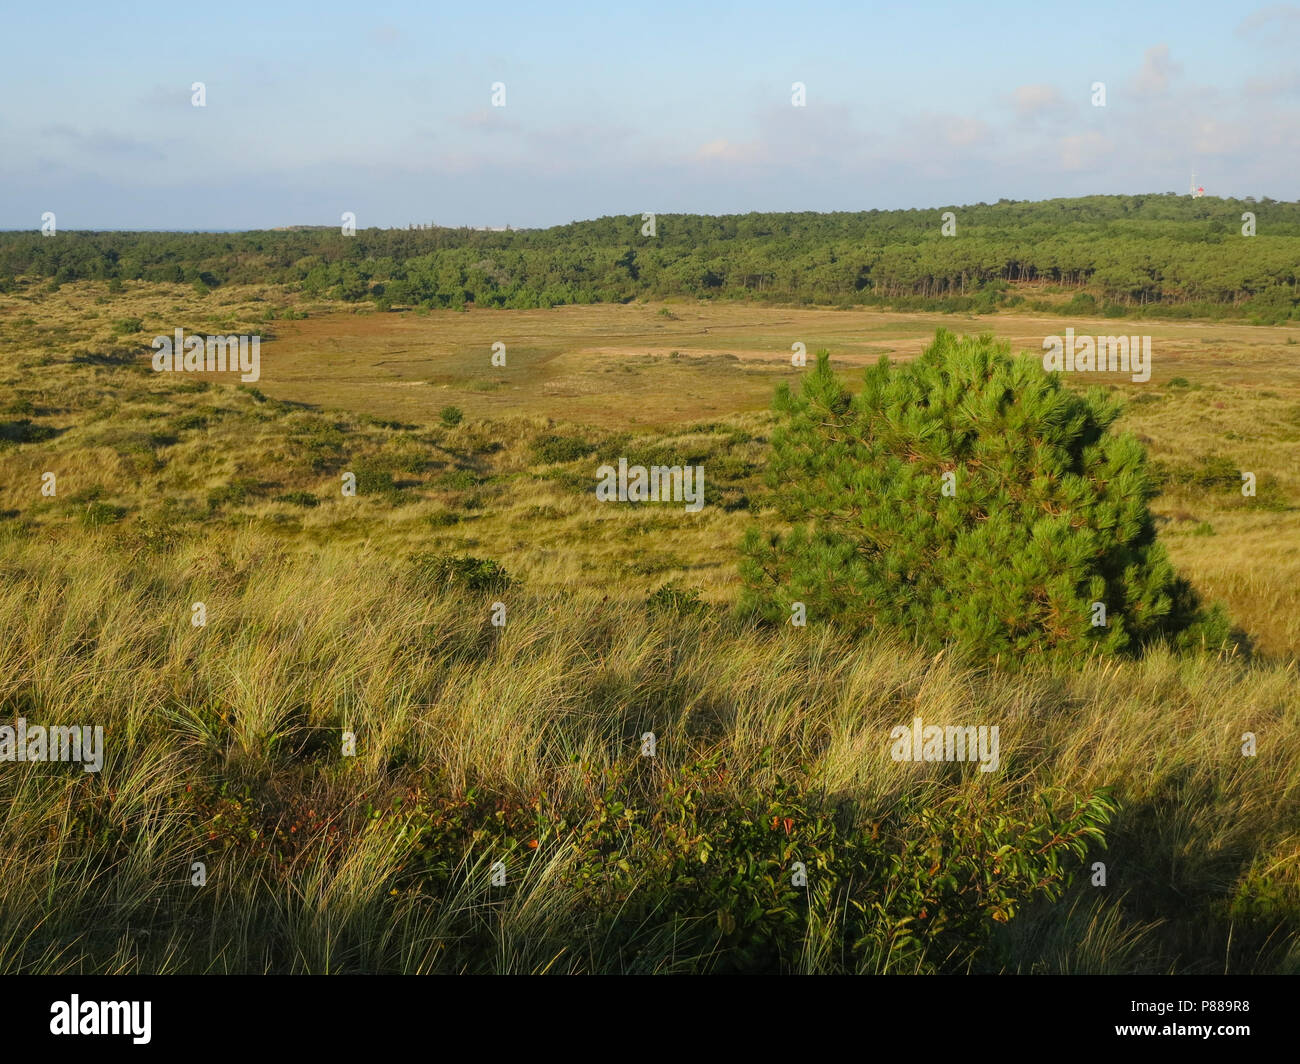 Uitzicht over duinen met naaldbomen; Overview of dunes with conifers Stock Photo